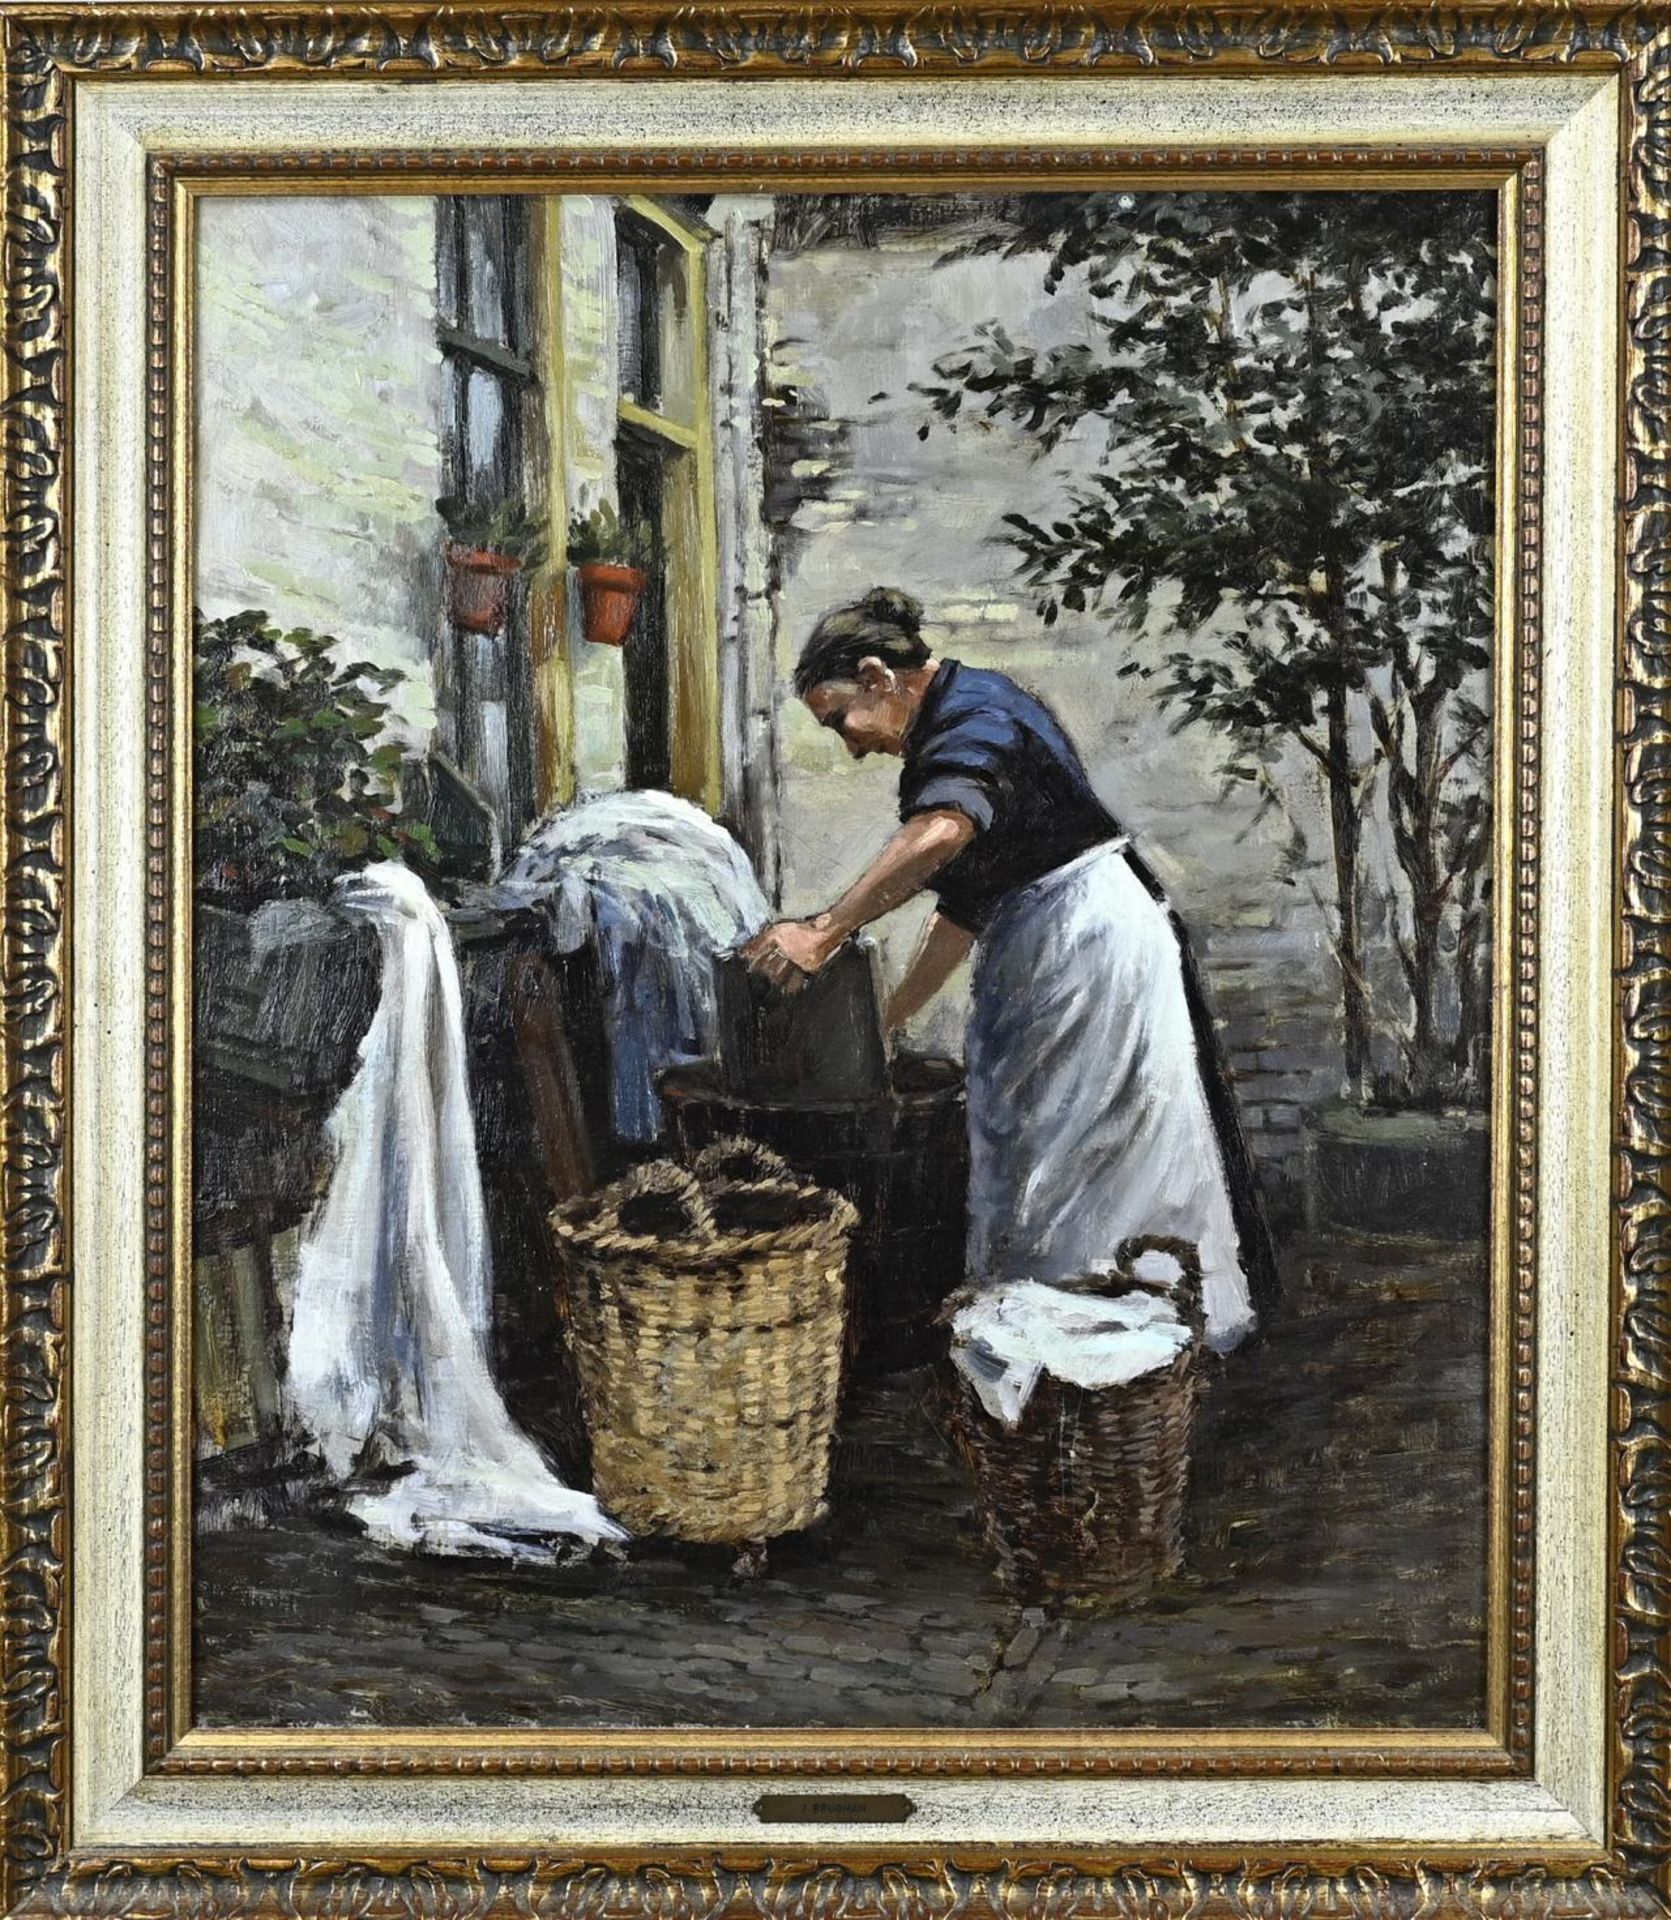 J. Brugman, Washing woman